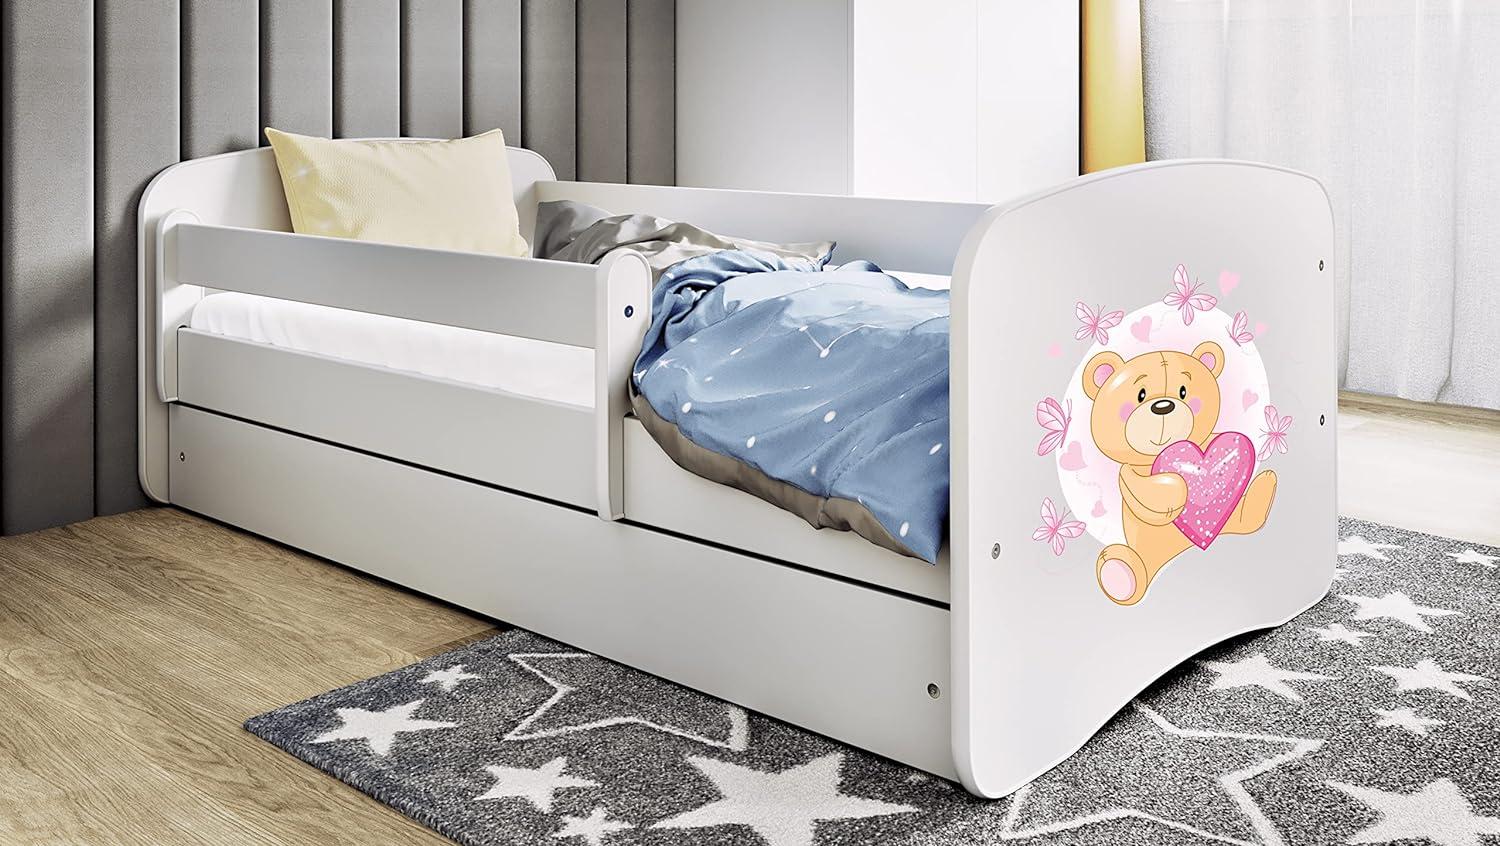 Kocot Kids 'Teddybär mit Schmetterlingen' Einzelbett weiß 80x160 cm inkl. Rausfallschutz, Matratze, Schublade und Lattenrost Bild 1